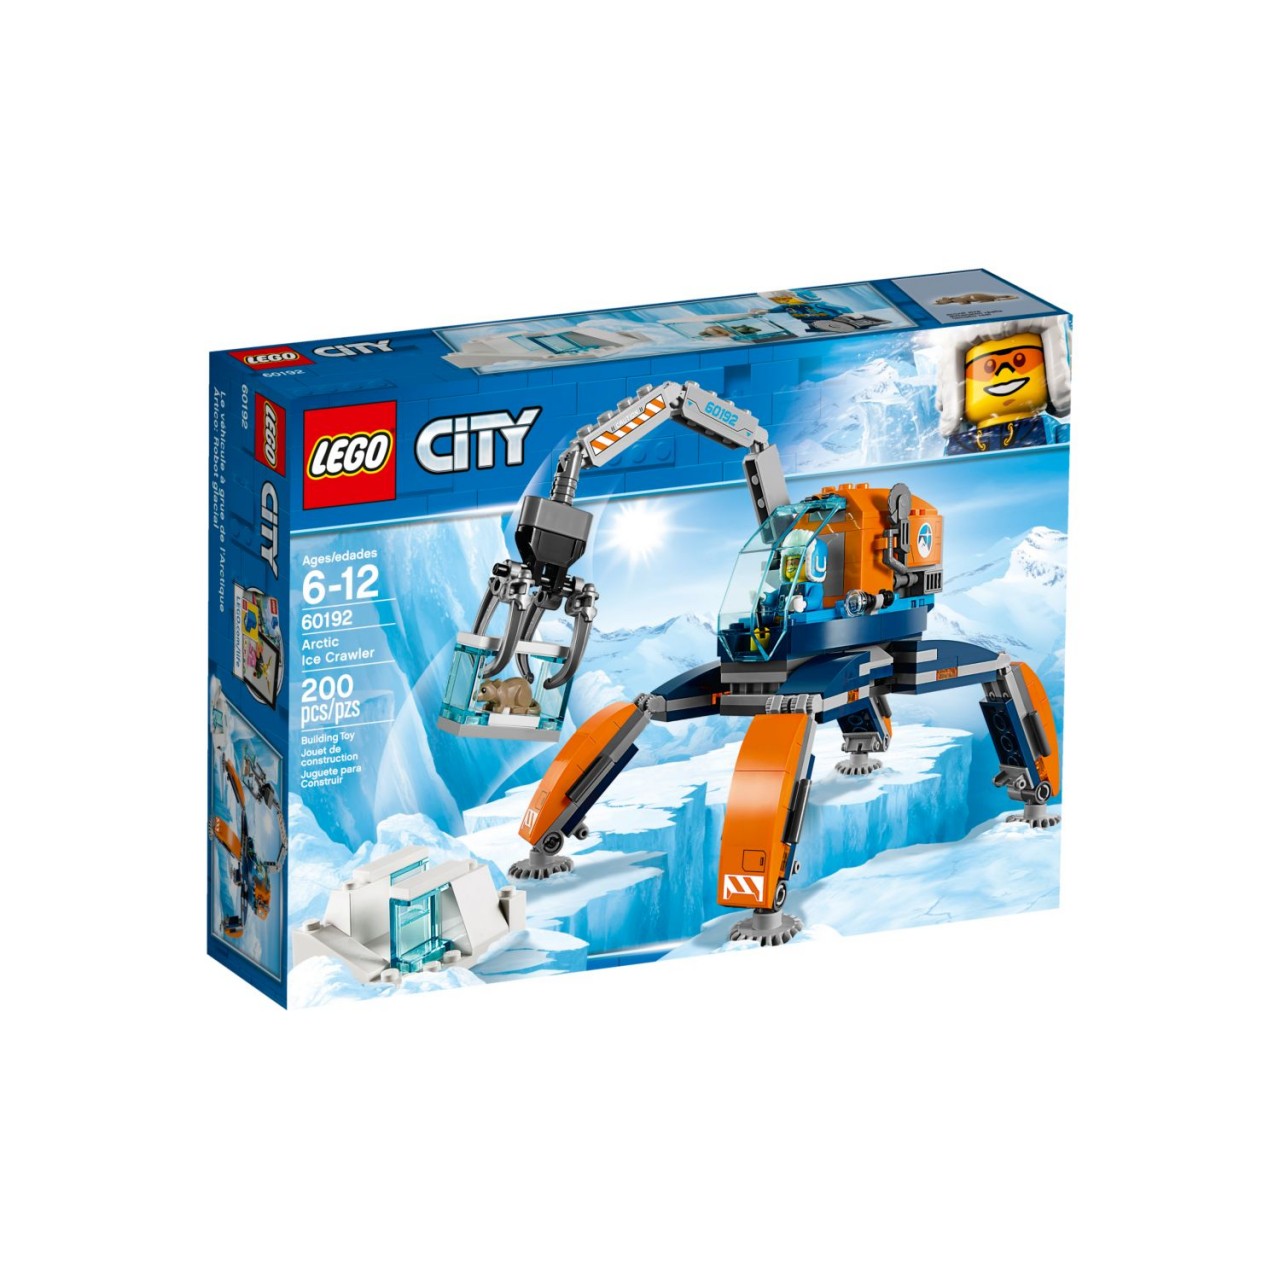 LEGO CITY 60192 Arktis Eiskran auf Stelzen